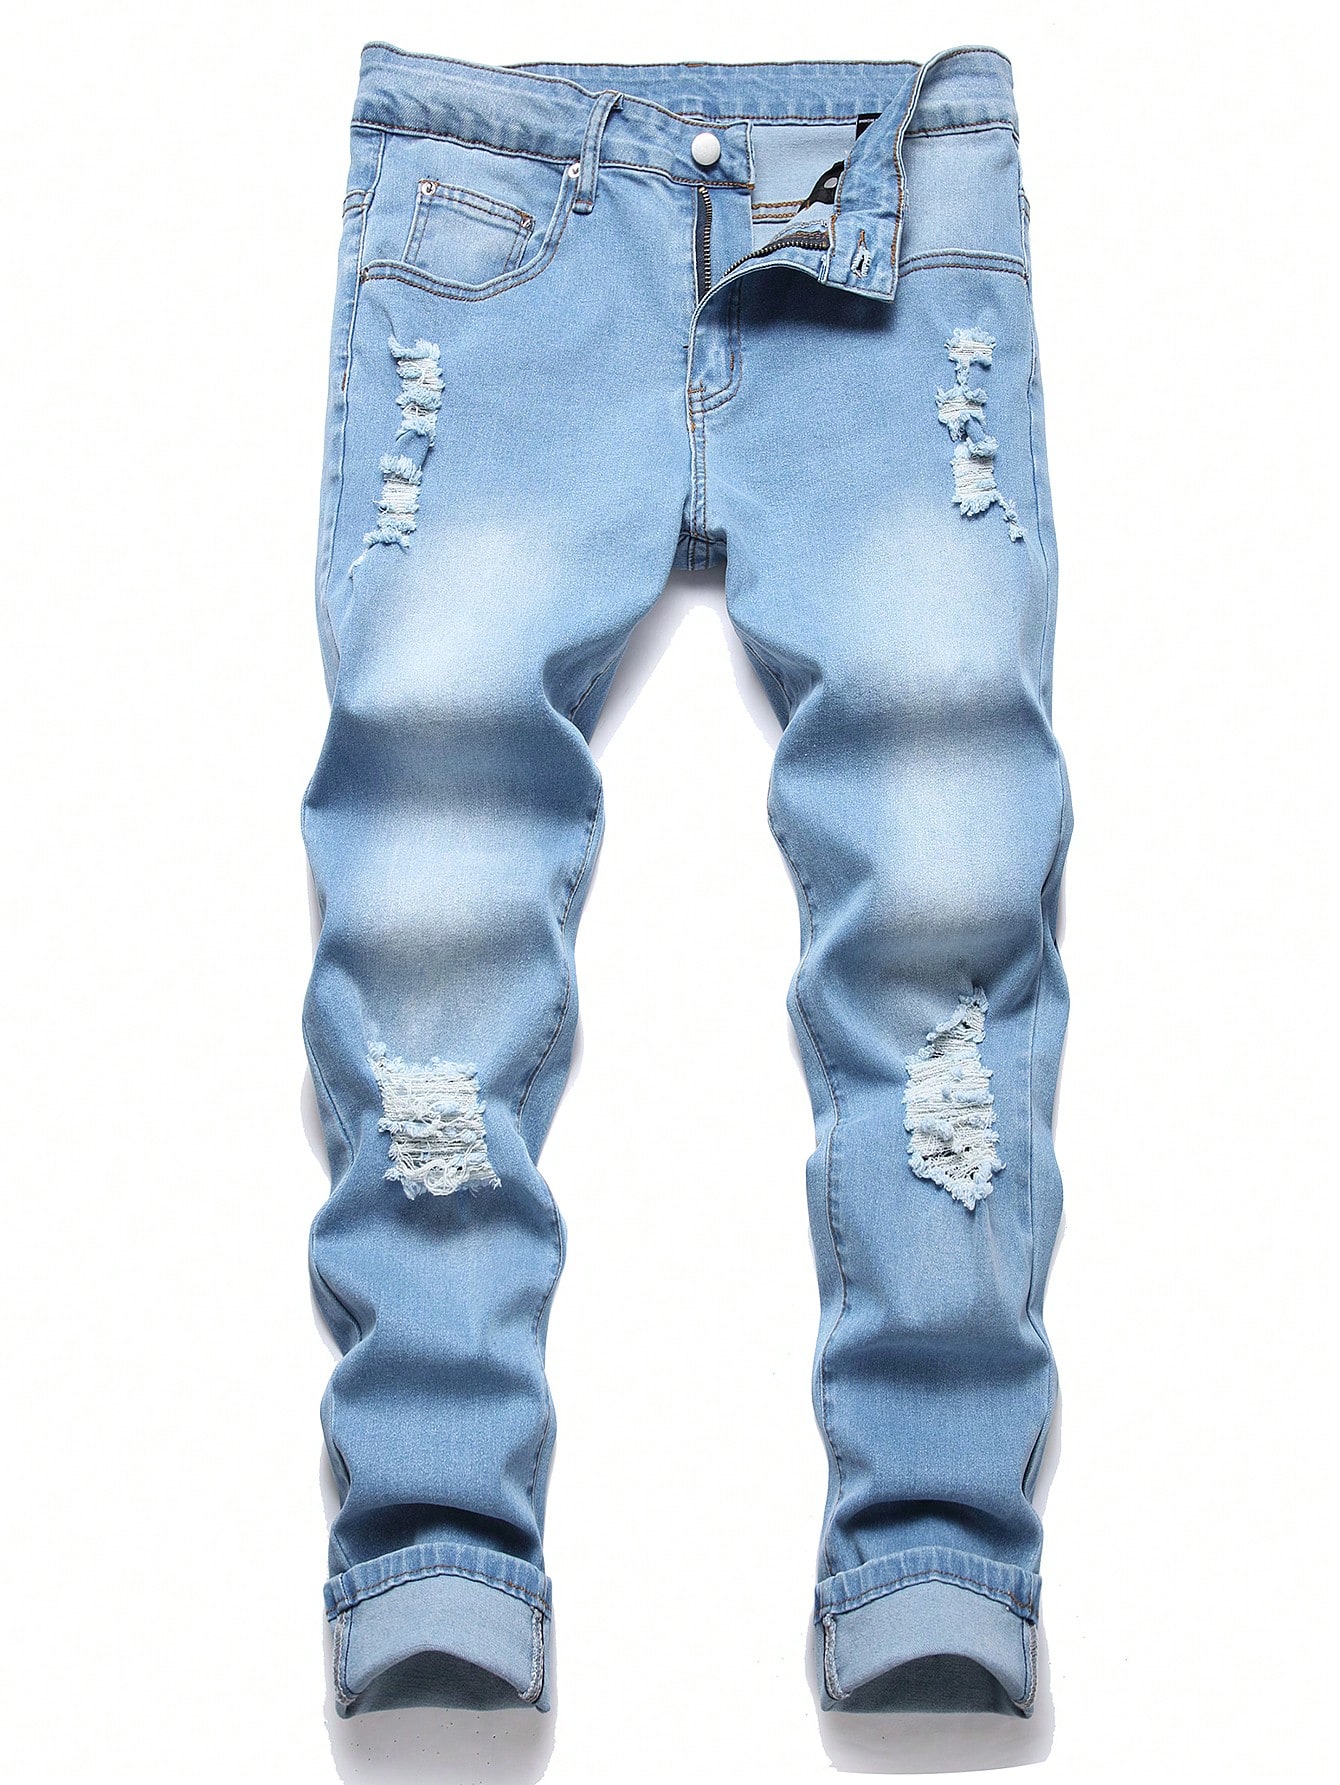 Мужские рваные джинсы скинни Manfinity EMRG, средняя стирка джинсы kiabi рваные 46 размер